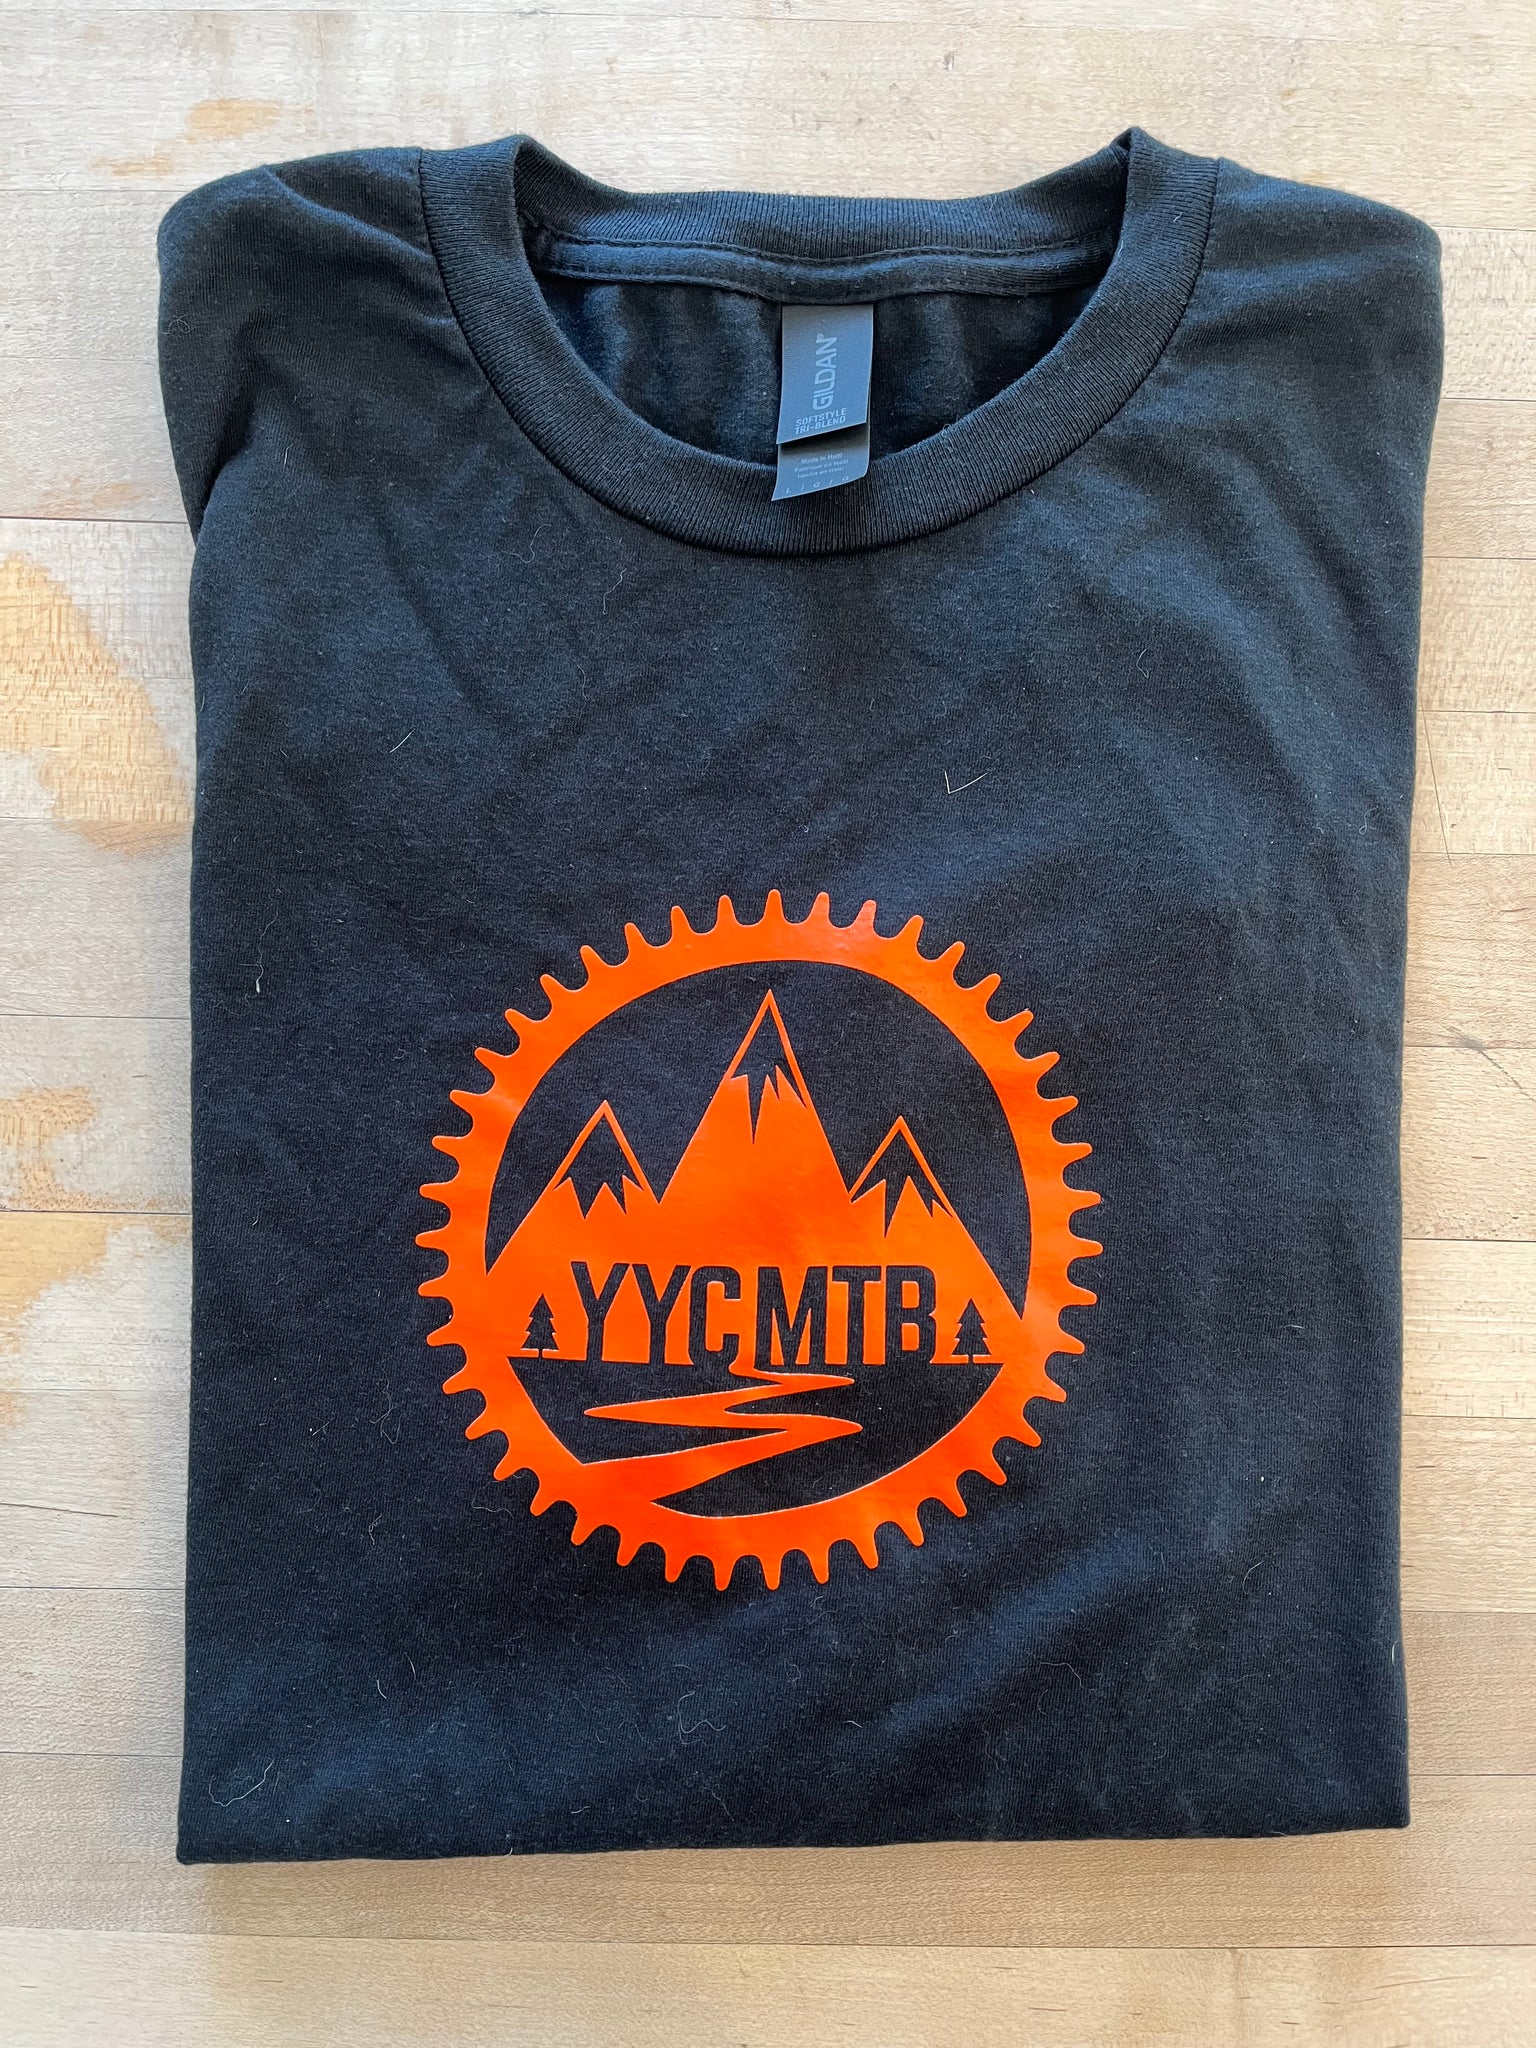 YYCMTB T-Shirts!